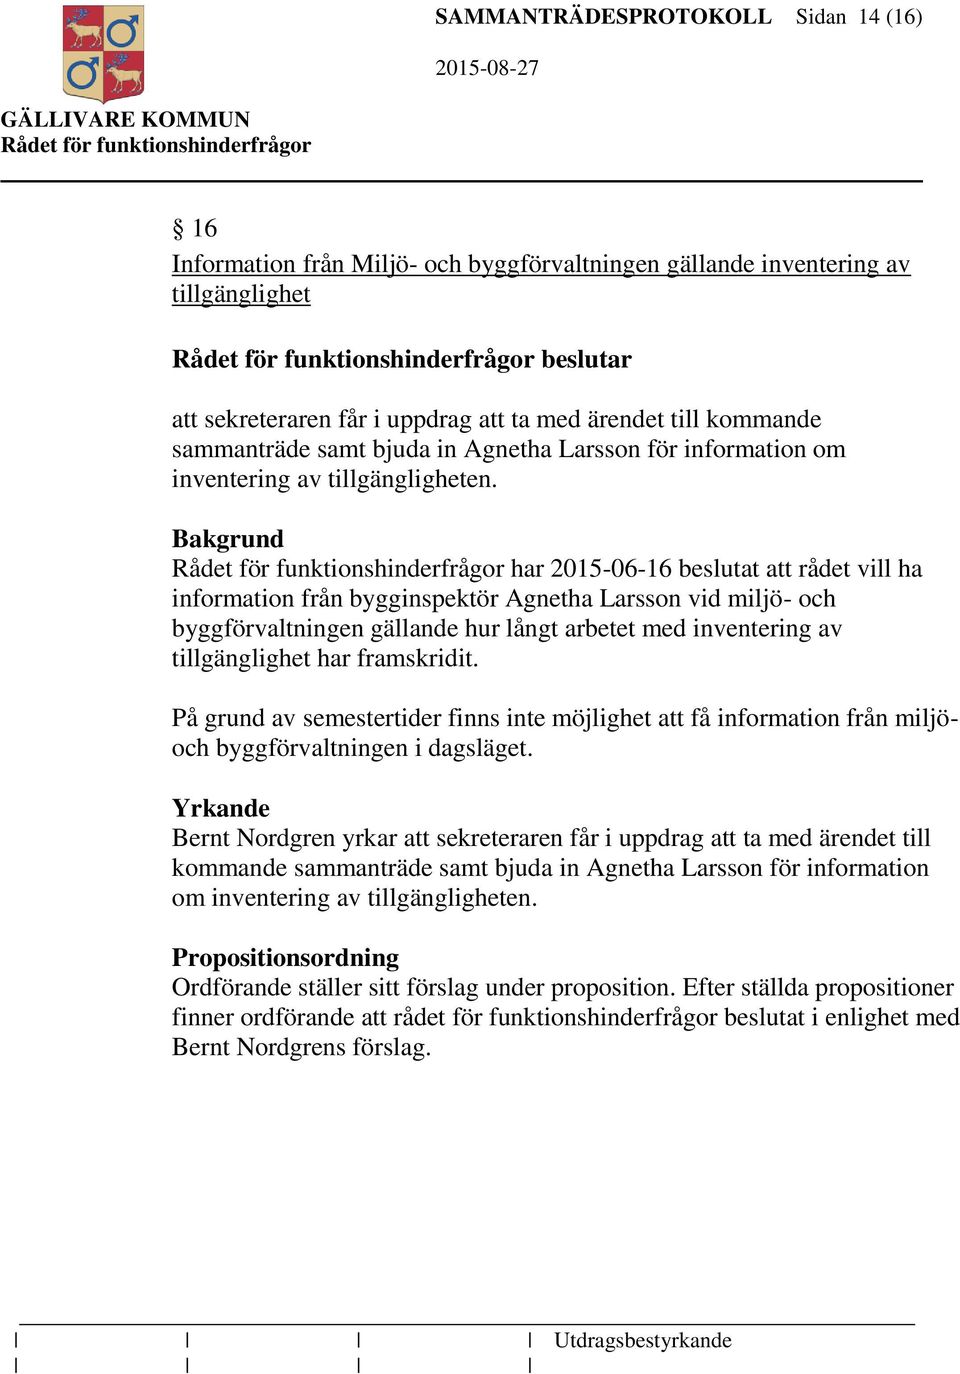 Bakgrund har 2015-06-16 beslutat att rådet vill ha information från bygginspektör Agnetha Larsson vid miljö- och byggförvaltningen gällande hur långt arbetet med inventering av tillgänglighet har